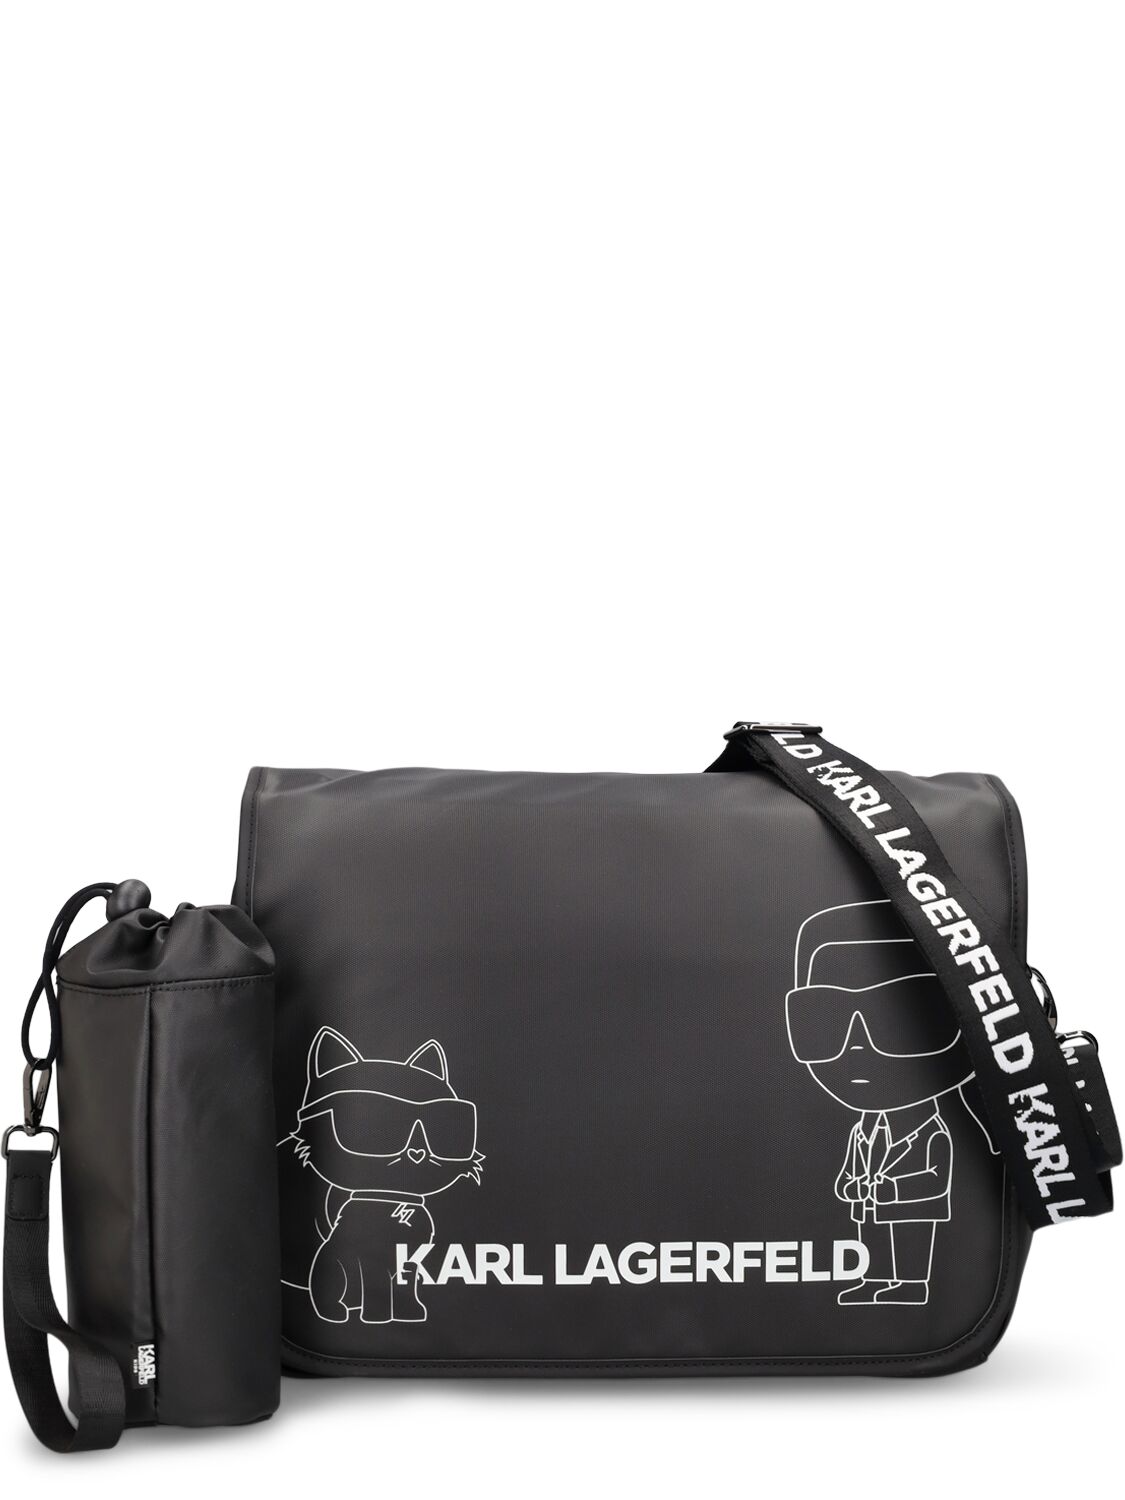 Karl Lagerfeld Kids' Nylon Changing Bag, Mat & Bottle Holder In Schwarz